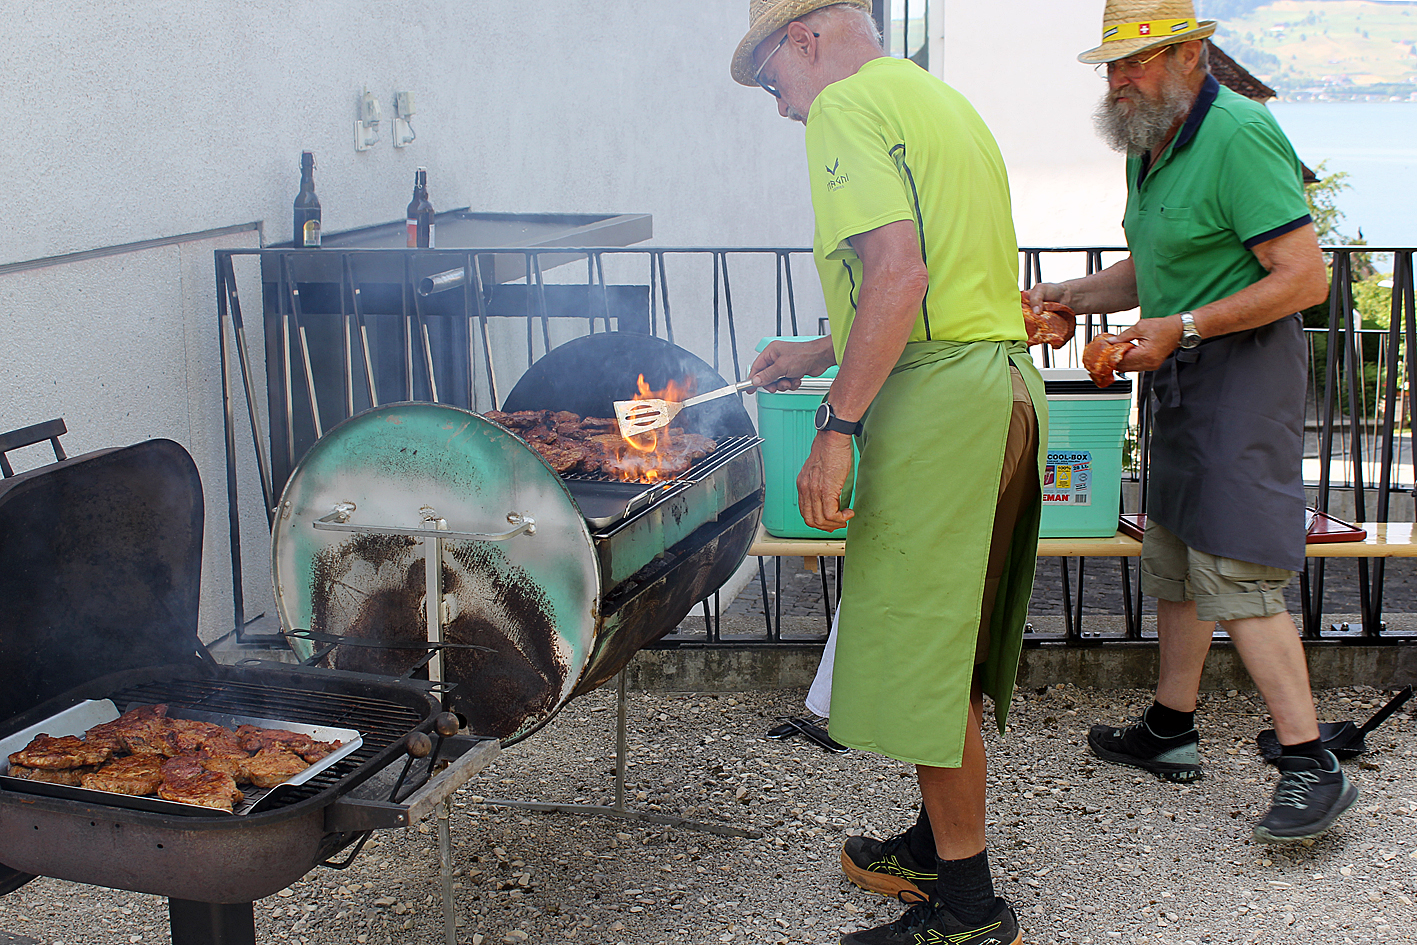 Senioren-Grillplausch / Senior citizens' barbecue